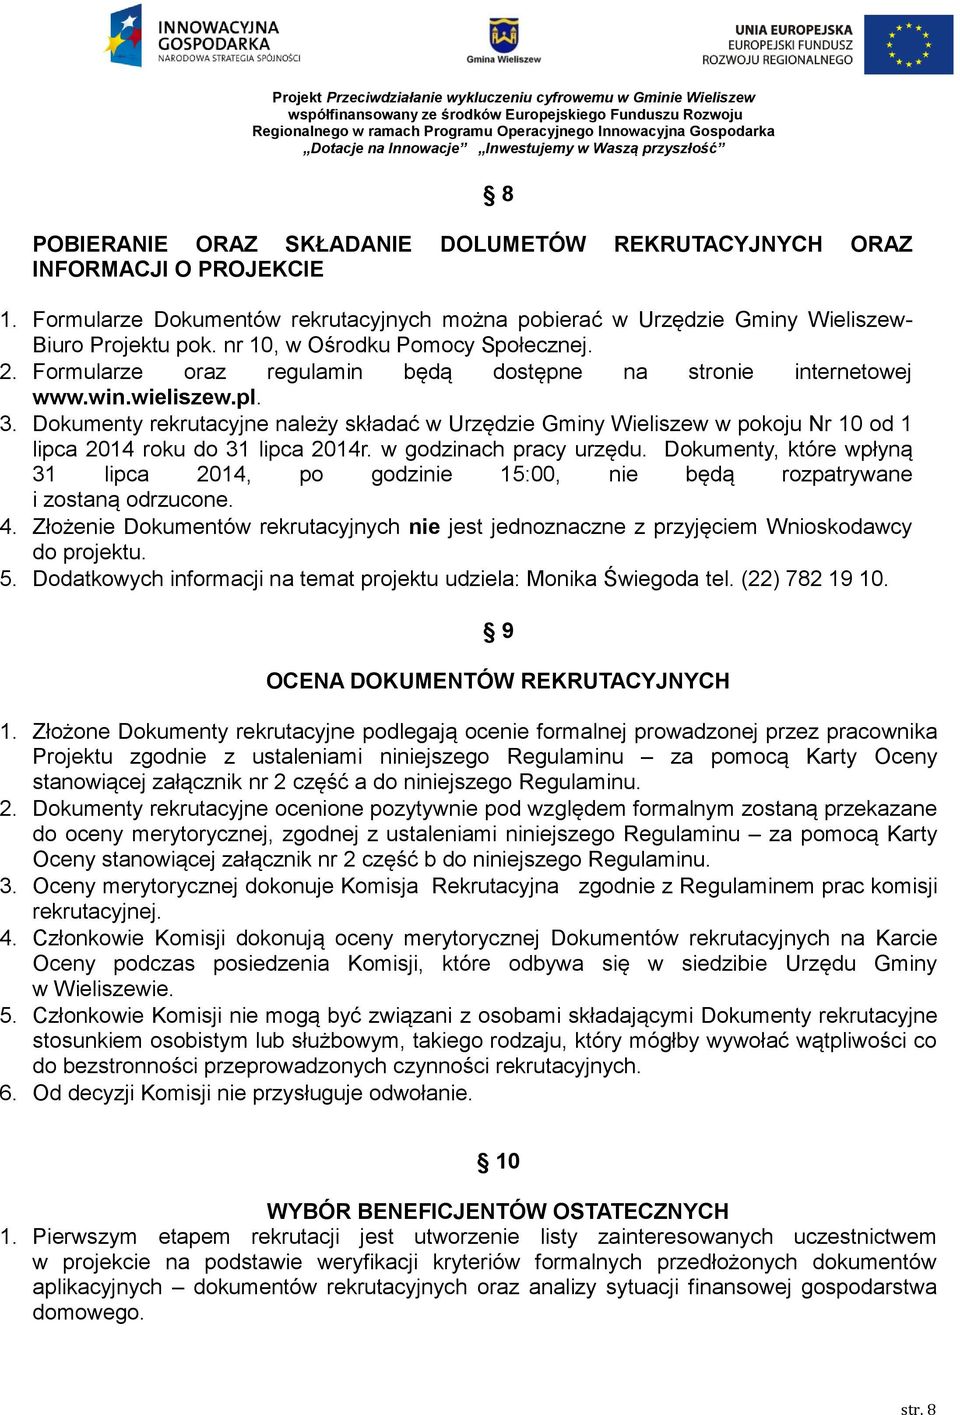 Dokumenty rekrutacyjne należy składać w Urzędzie Gminy Wieliszew w pokoju Nr 10 od 1 lipca 2014 roku do 31 lipca 2014r. w godzinach pracy urzędu.